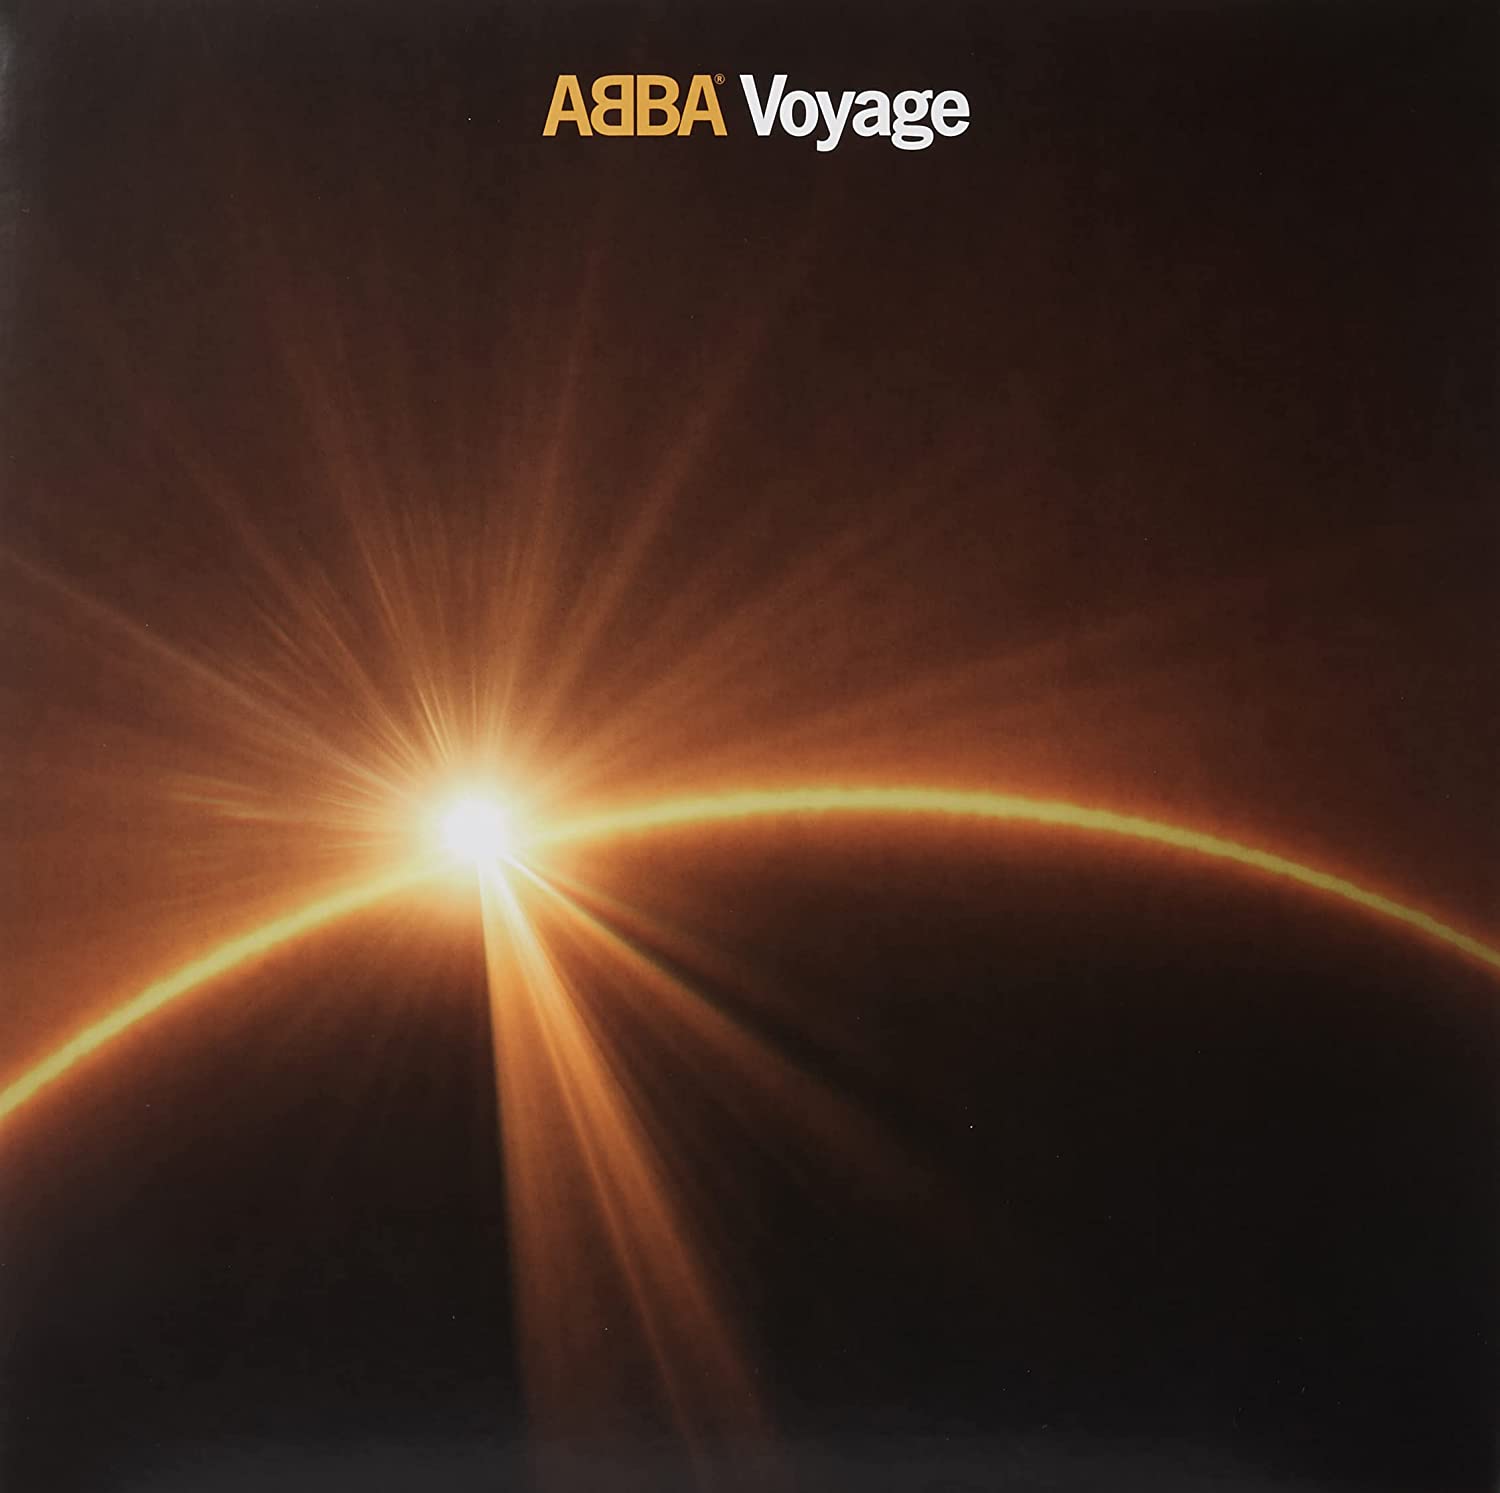 Copertina Vinile 33 giri Voyage di Abba